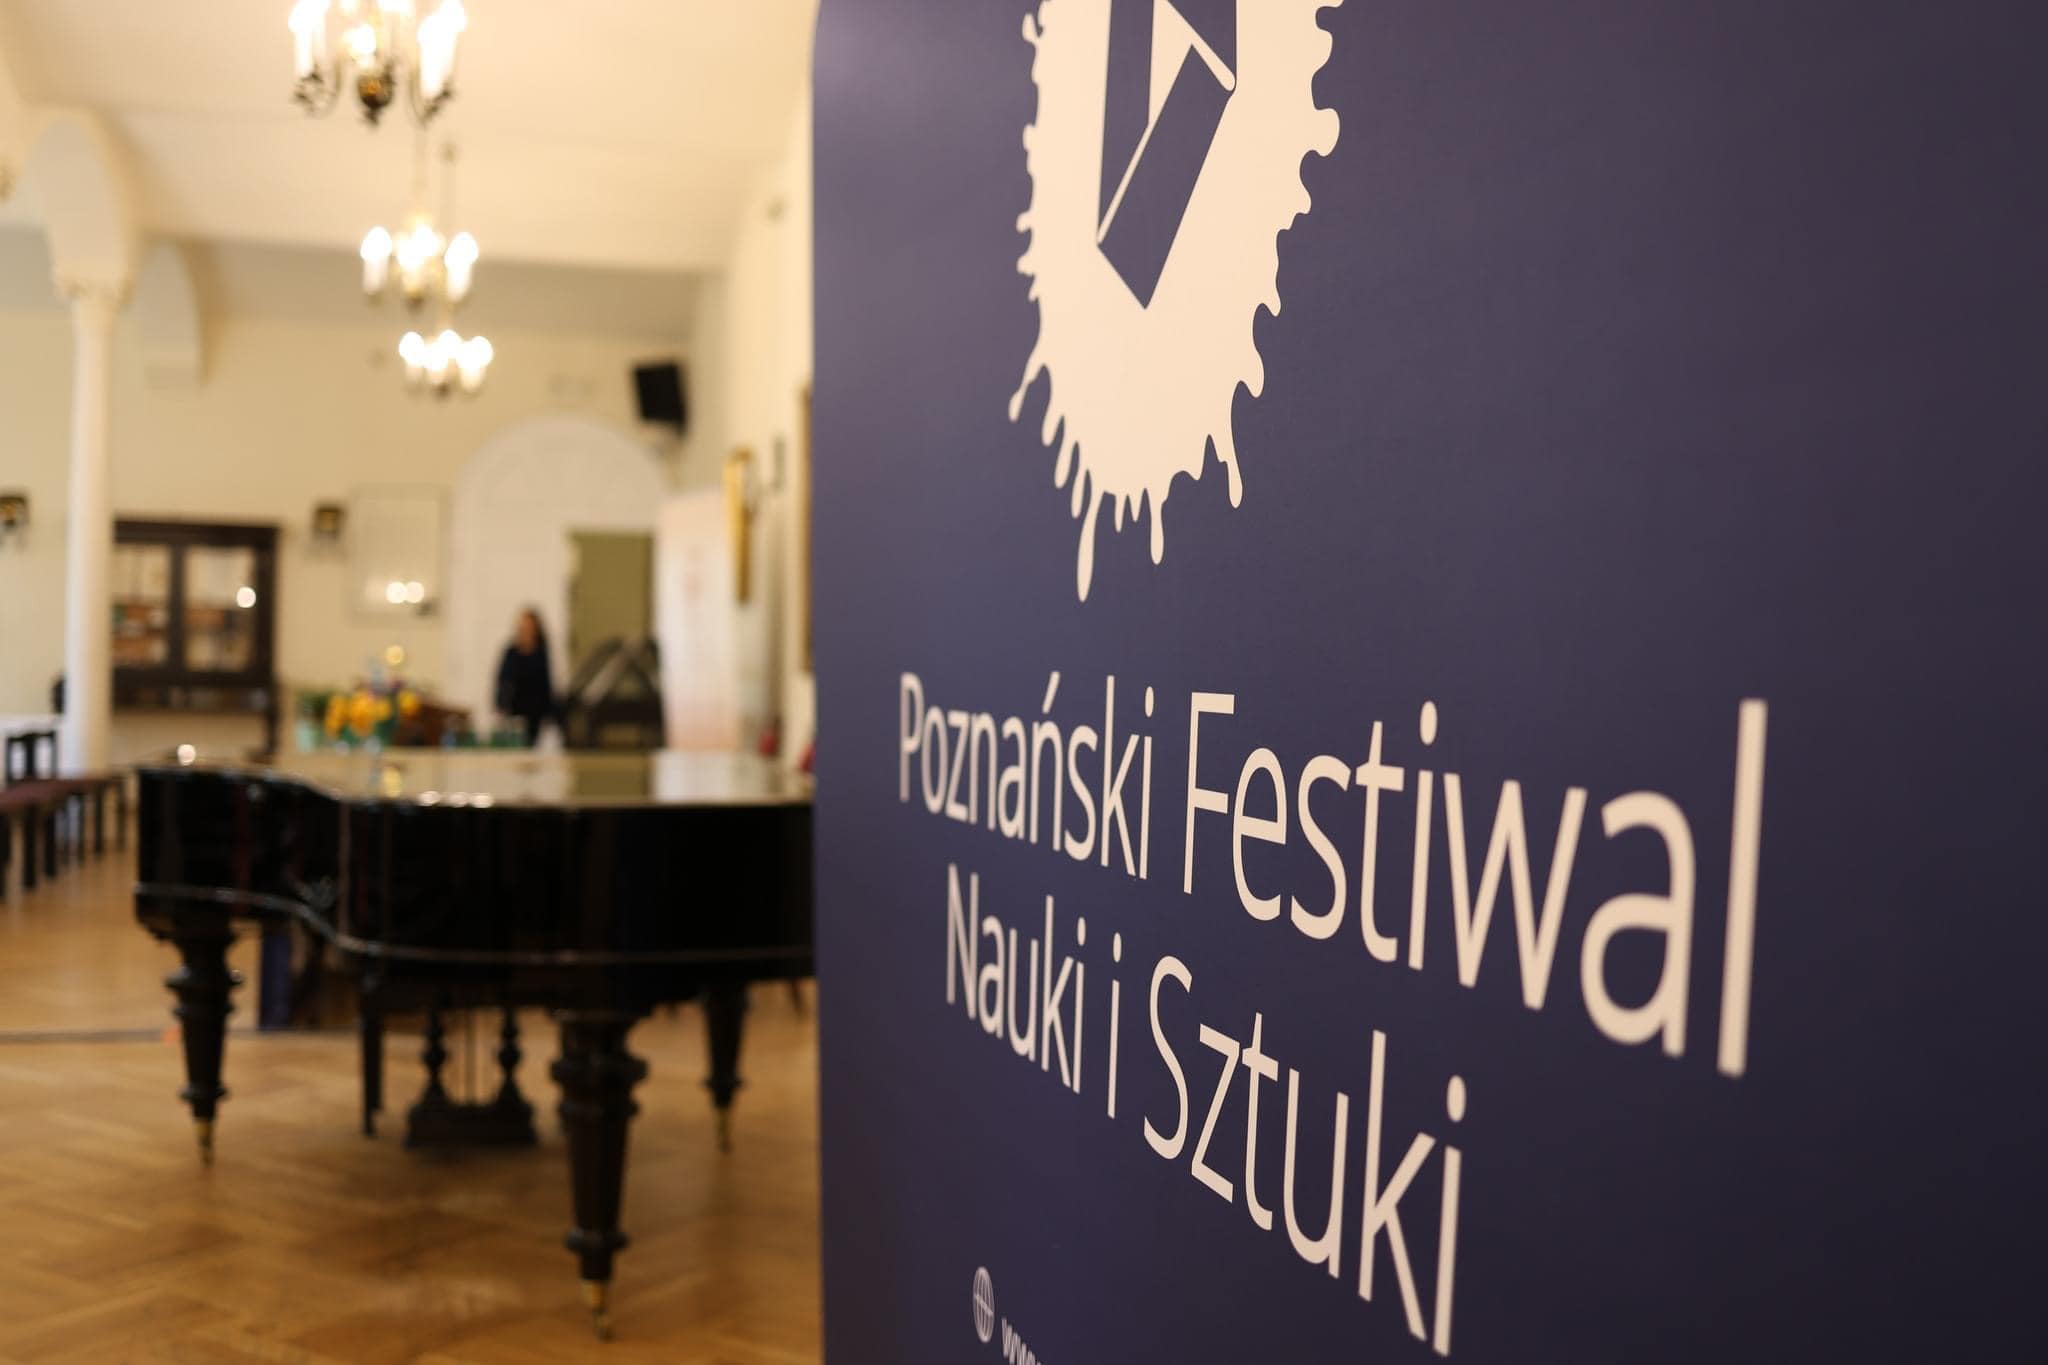 Inauguracja XXVII edycji Poznańskiego Festiwalu Nauki i Sztuki w Sali Posiedzeń PTPN